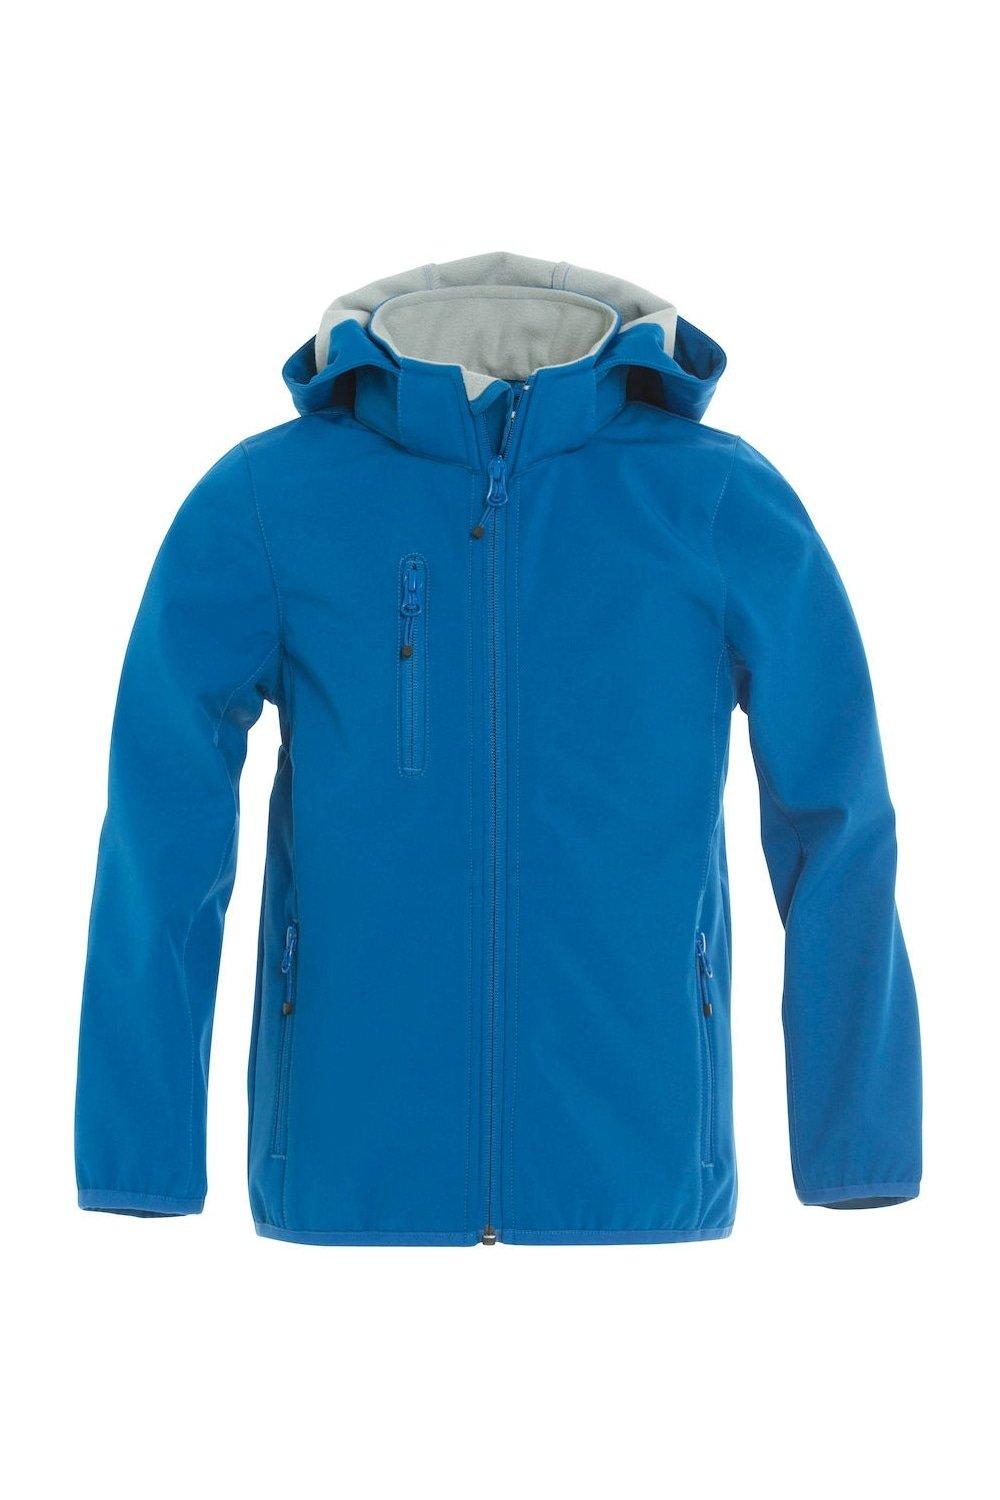 Базовая куртка Soft Shell Clique, синий базовая спортивная сумка clique синий